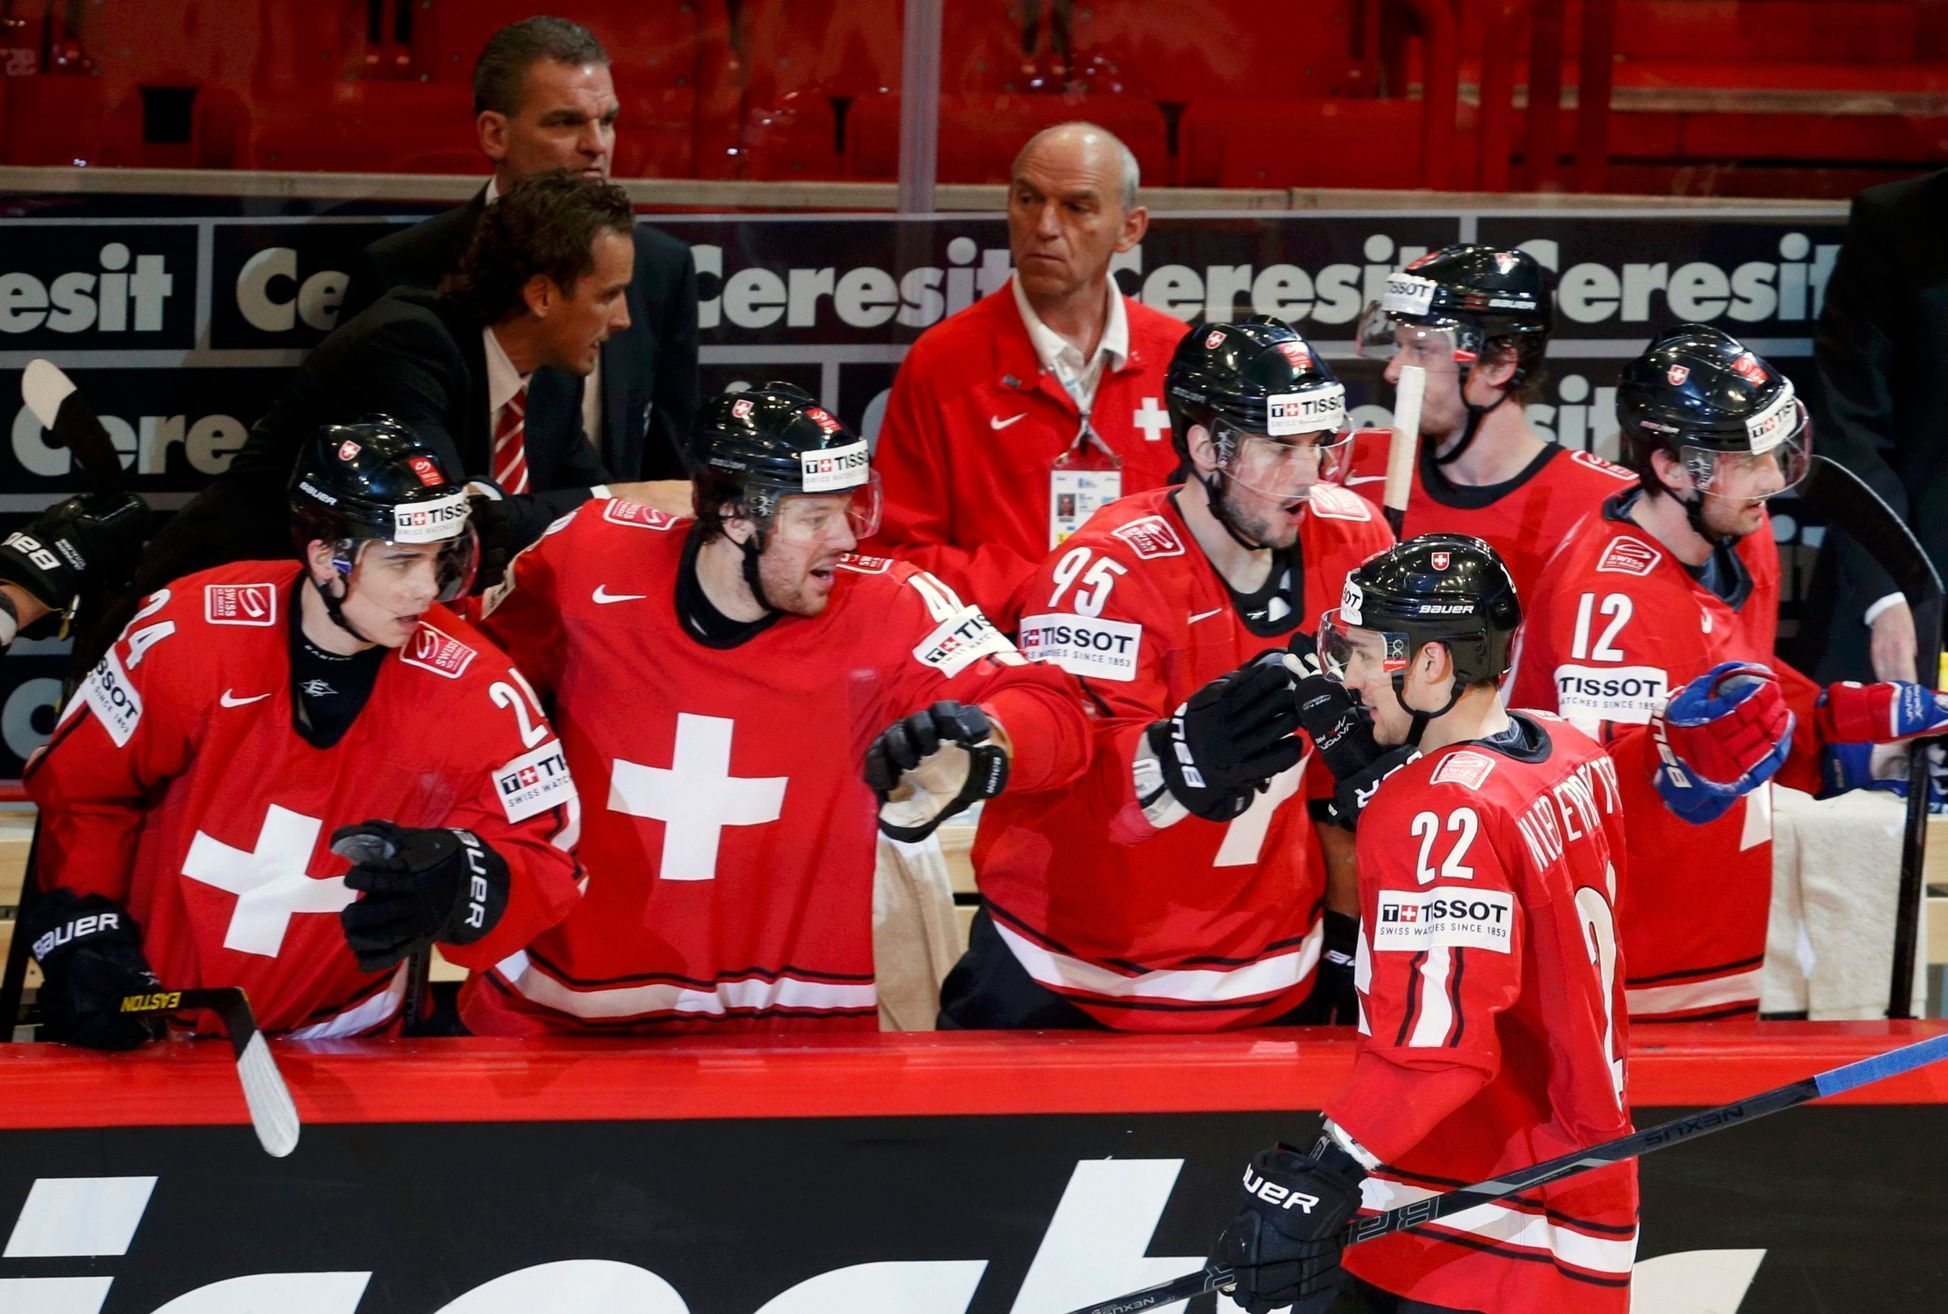 Hokej, MS 2013, Česko - Švýcarsko: Nino Niederreiter slaví gól na 0:2